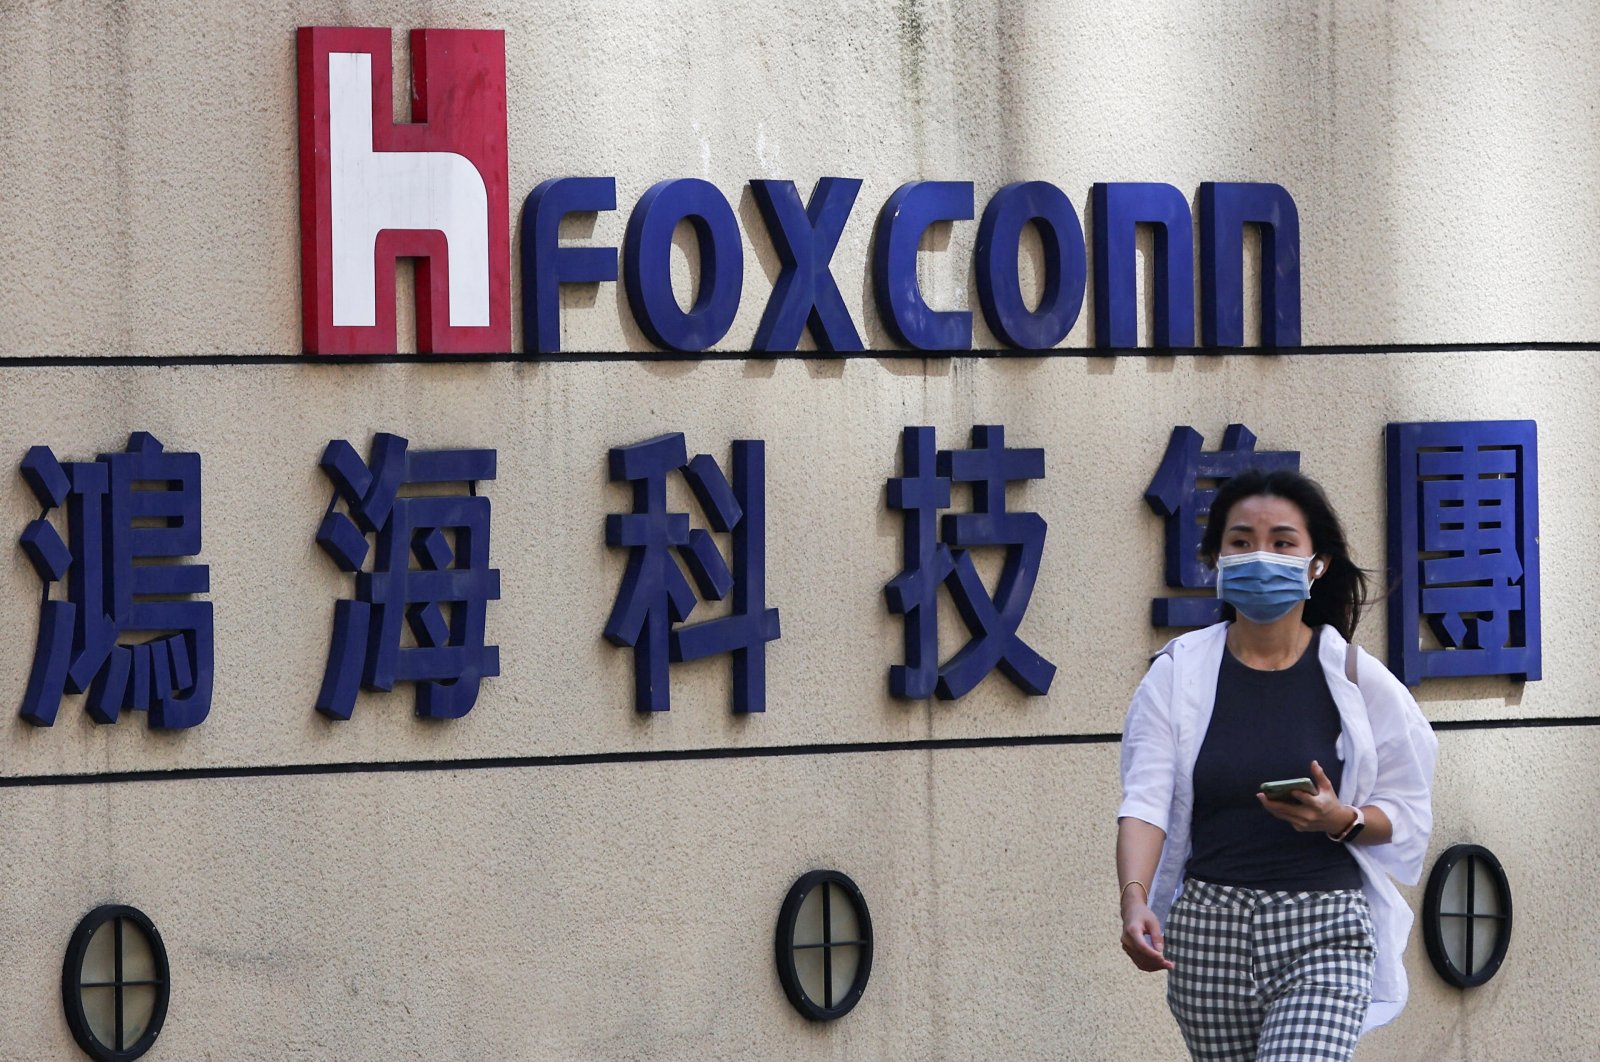 Di balik kesengsaraan Foxconn di China: Ketidakpercayaan, miskomunikasi, pembatasan COVID